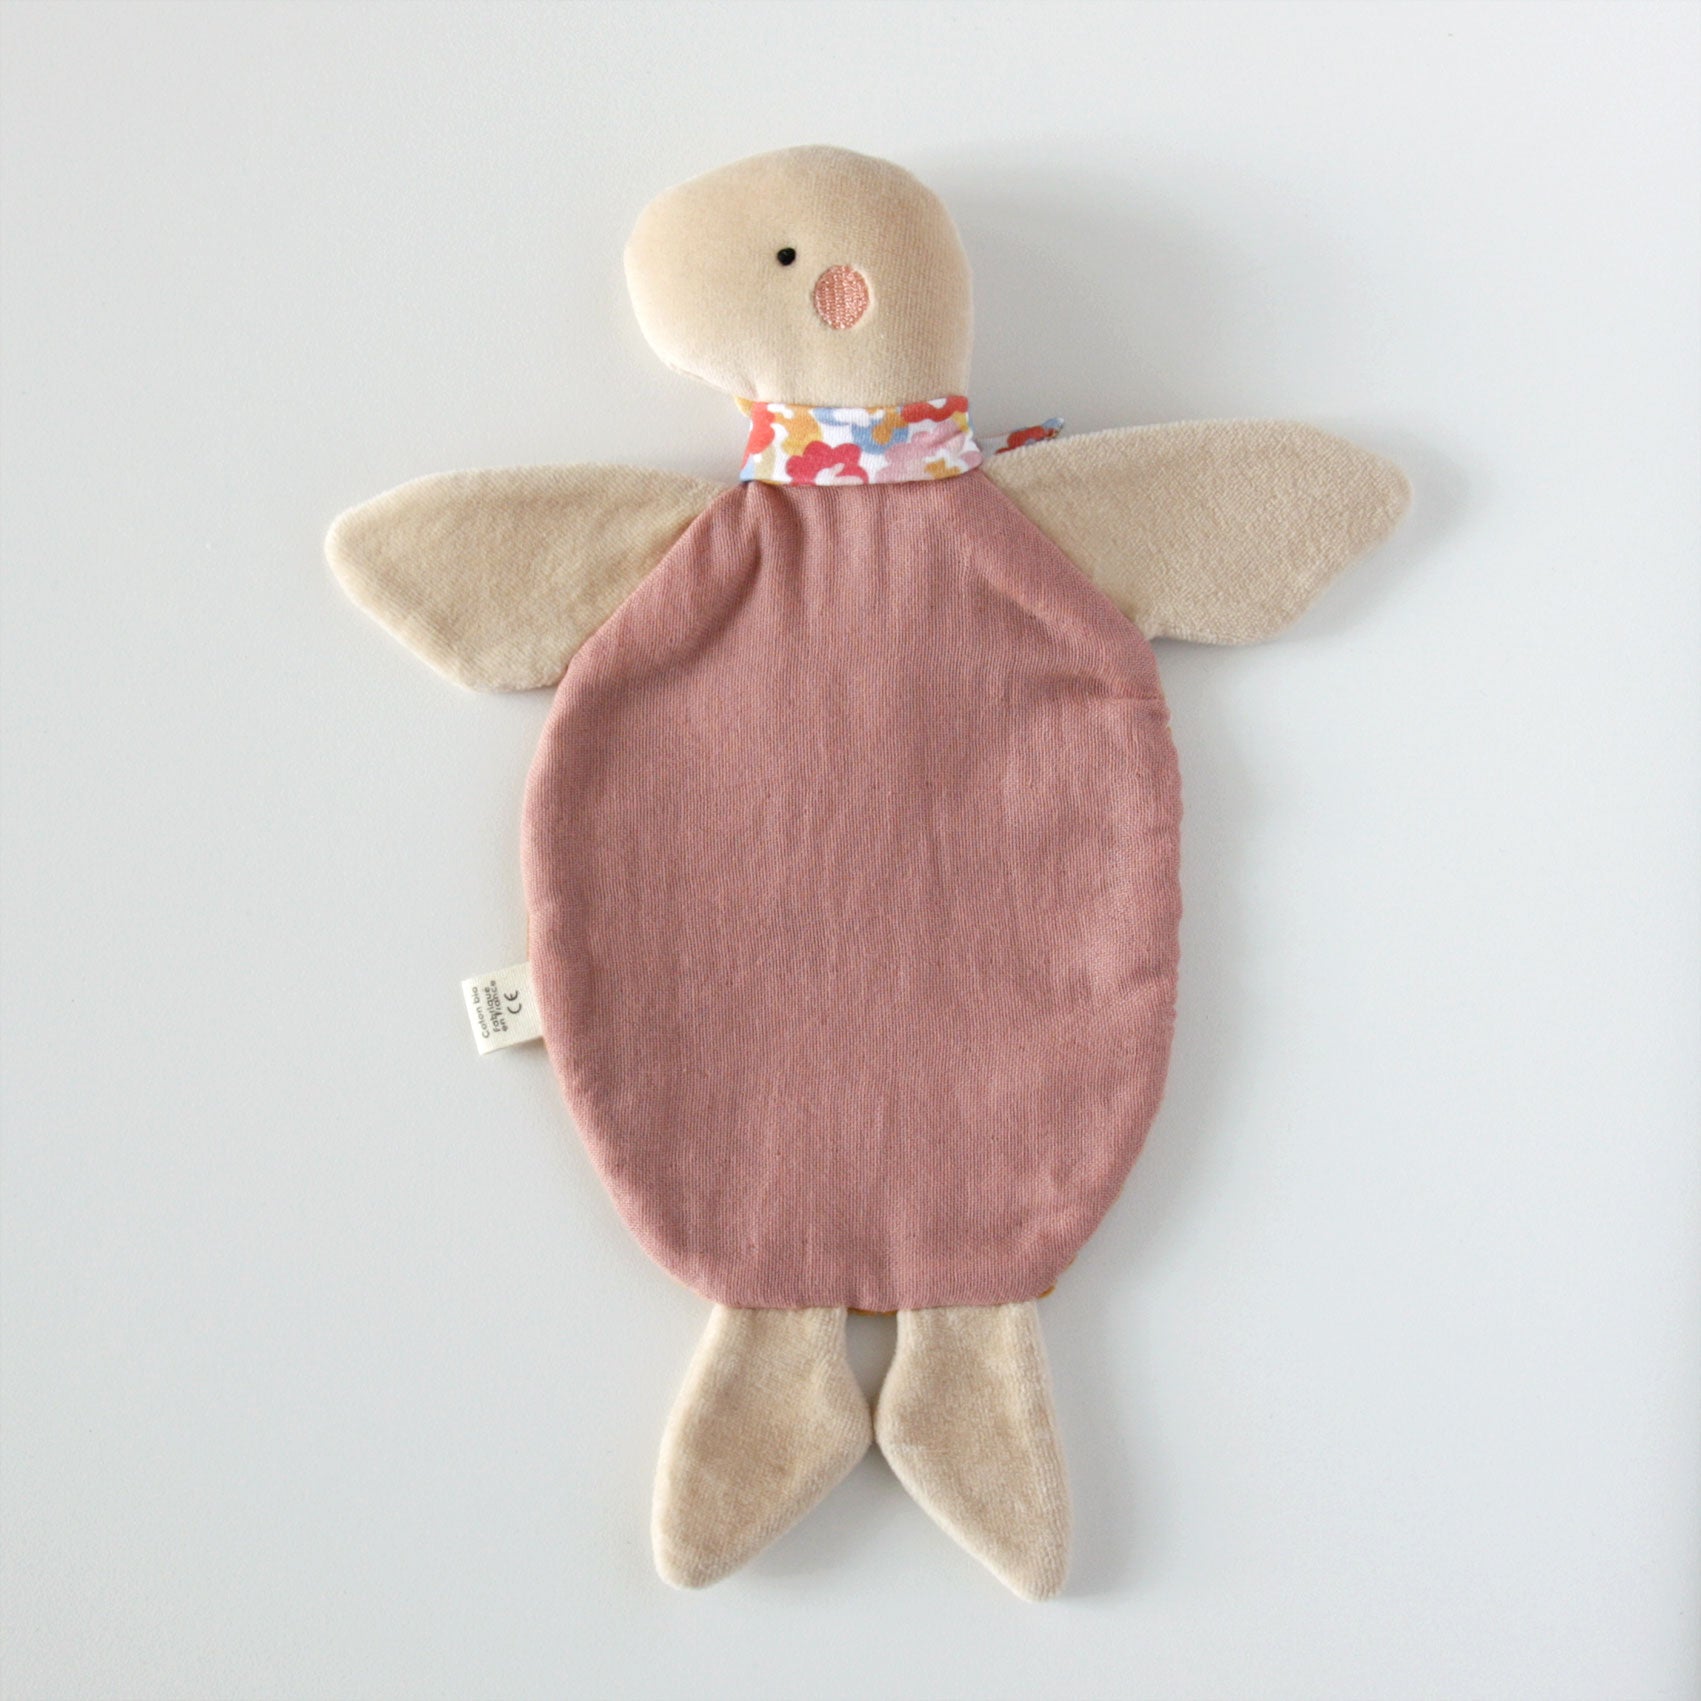 Doudou plat tortue rose, coton bio, fait main, cadeau naissance, séance  photo de naissance - Un grand marché